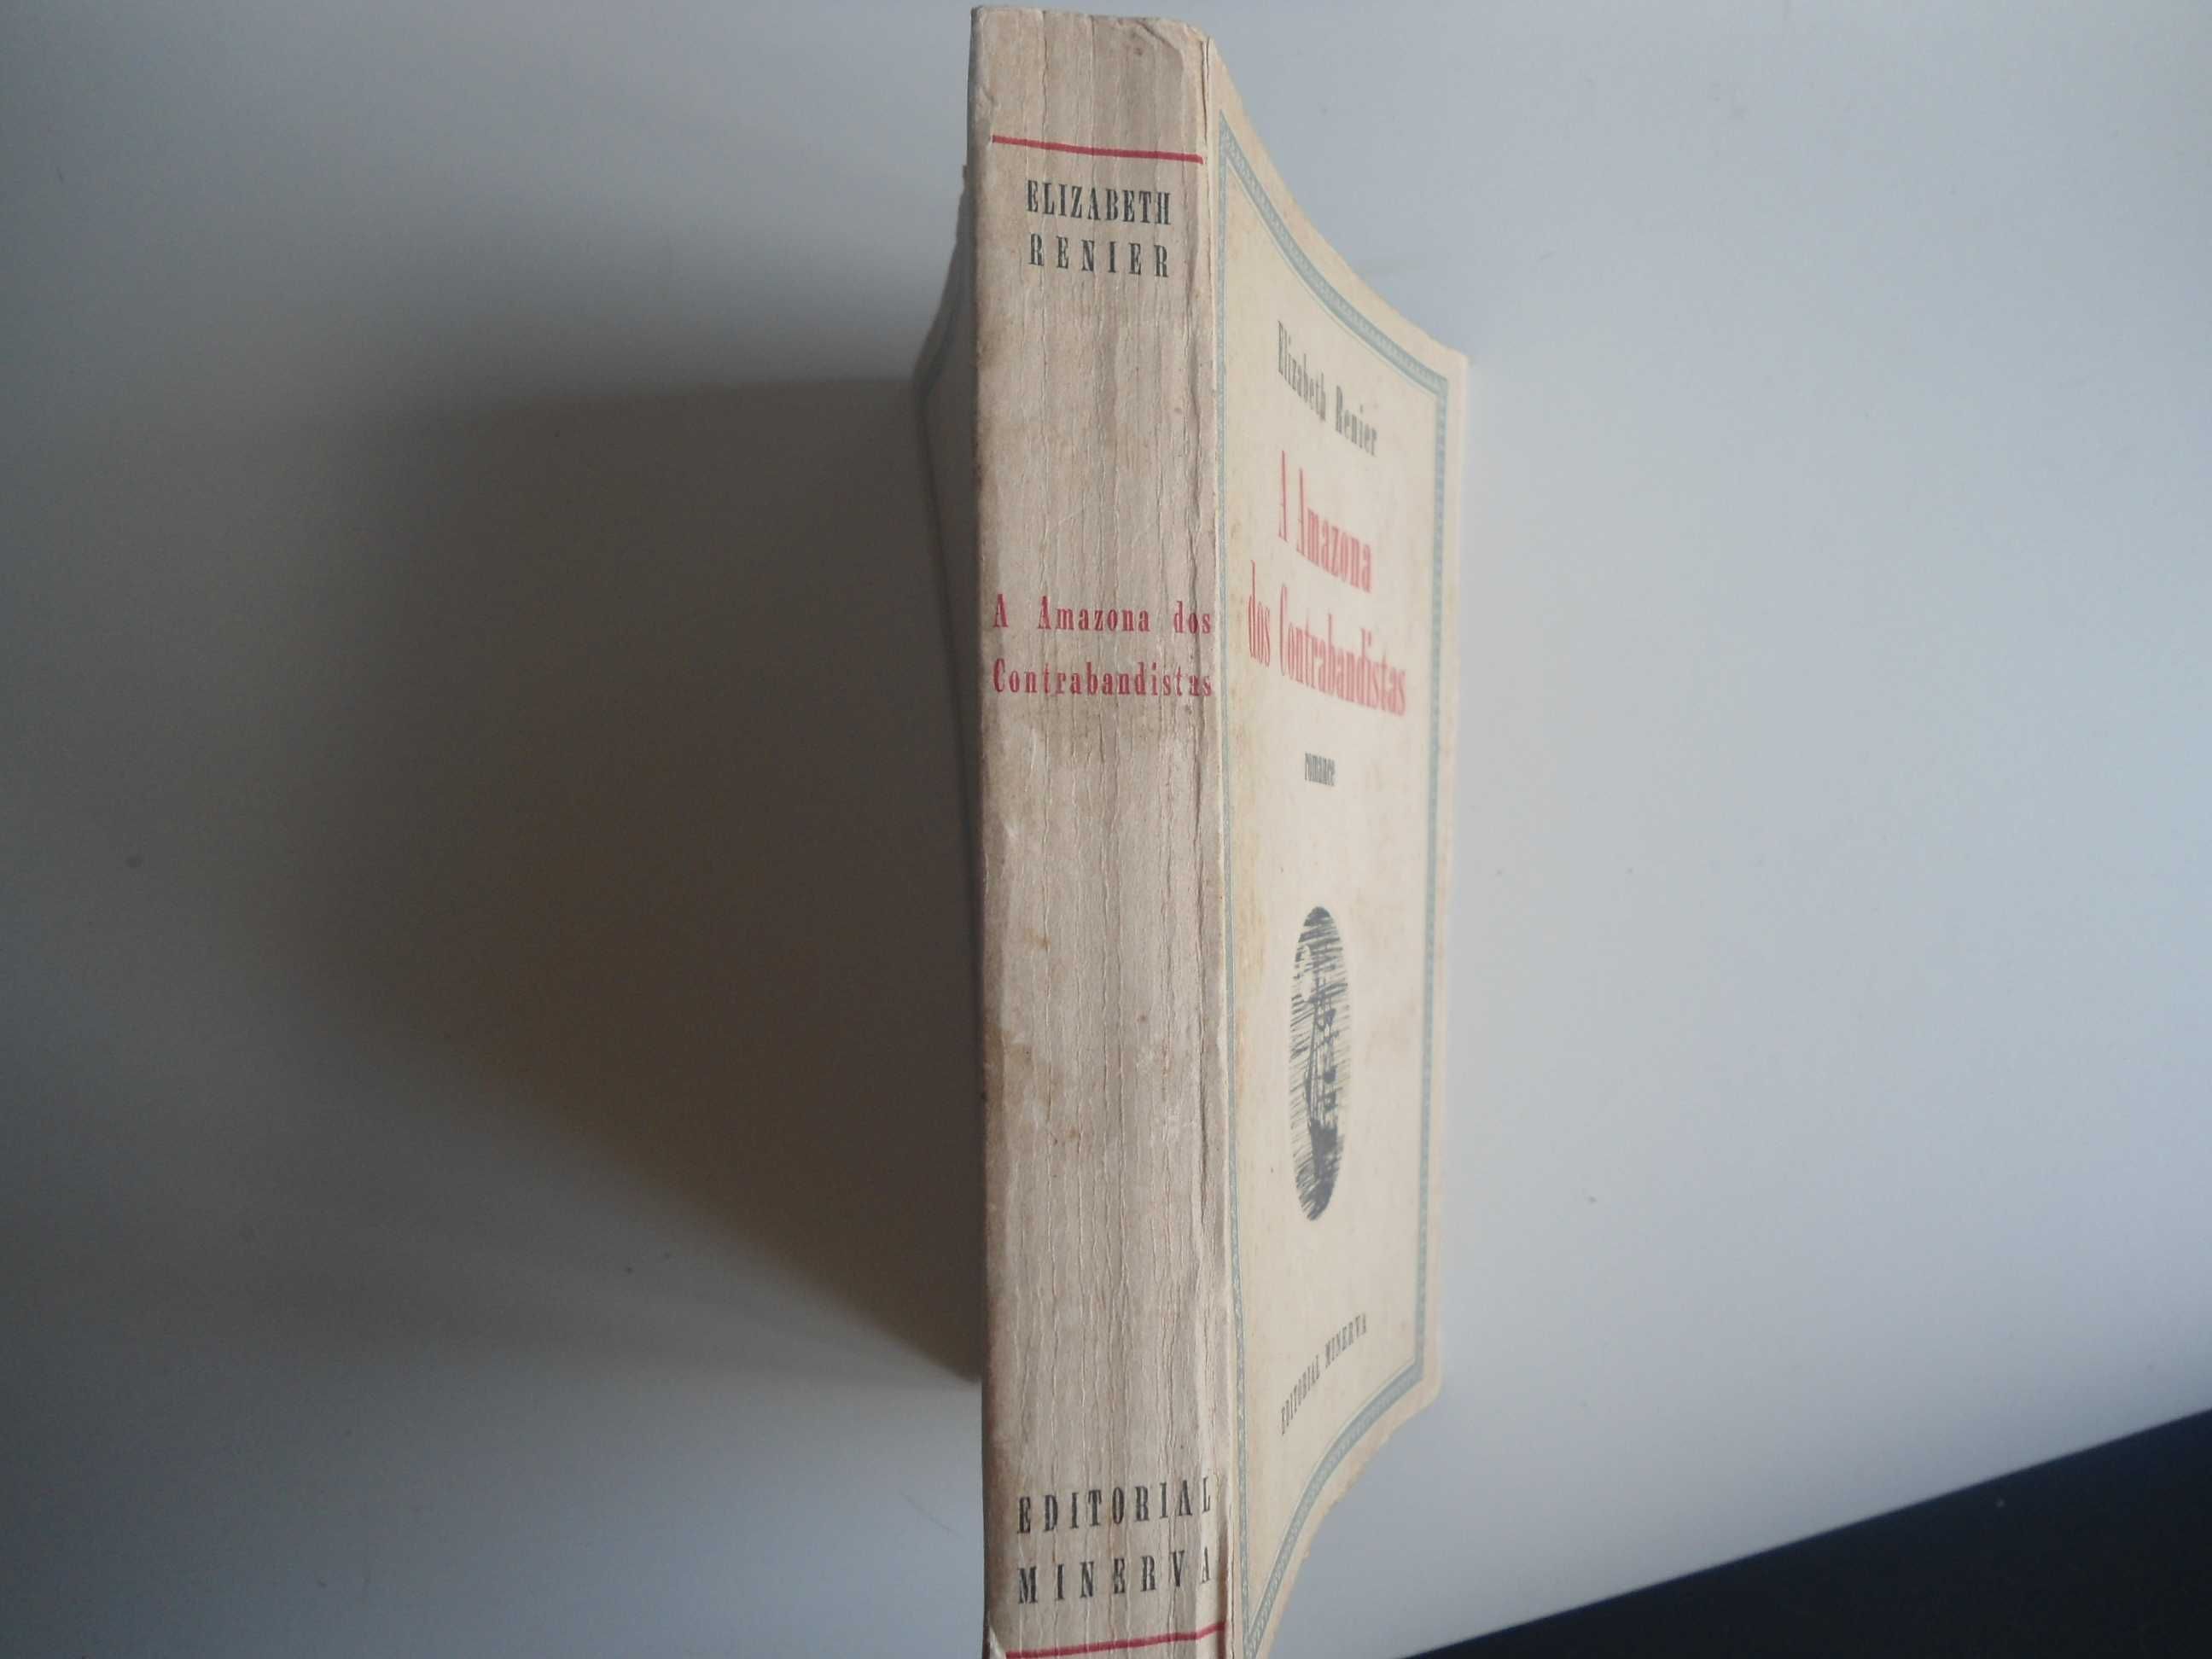 A Amazona dos Contrabandistas por Elizabeth Renier (1ª edição-1963)